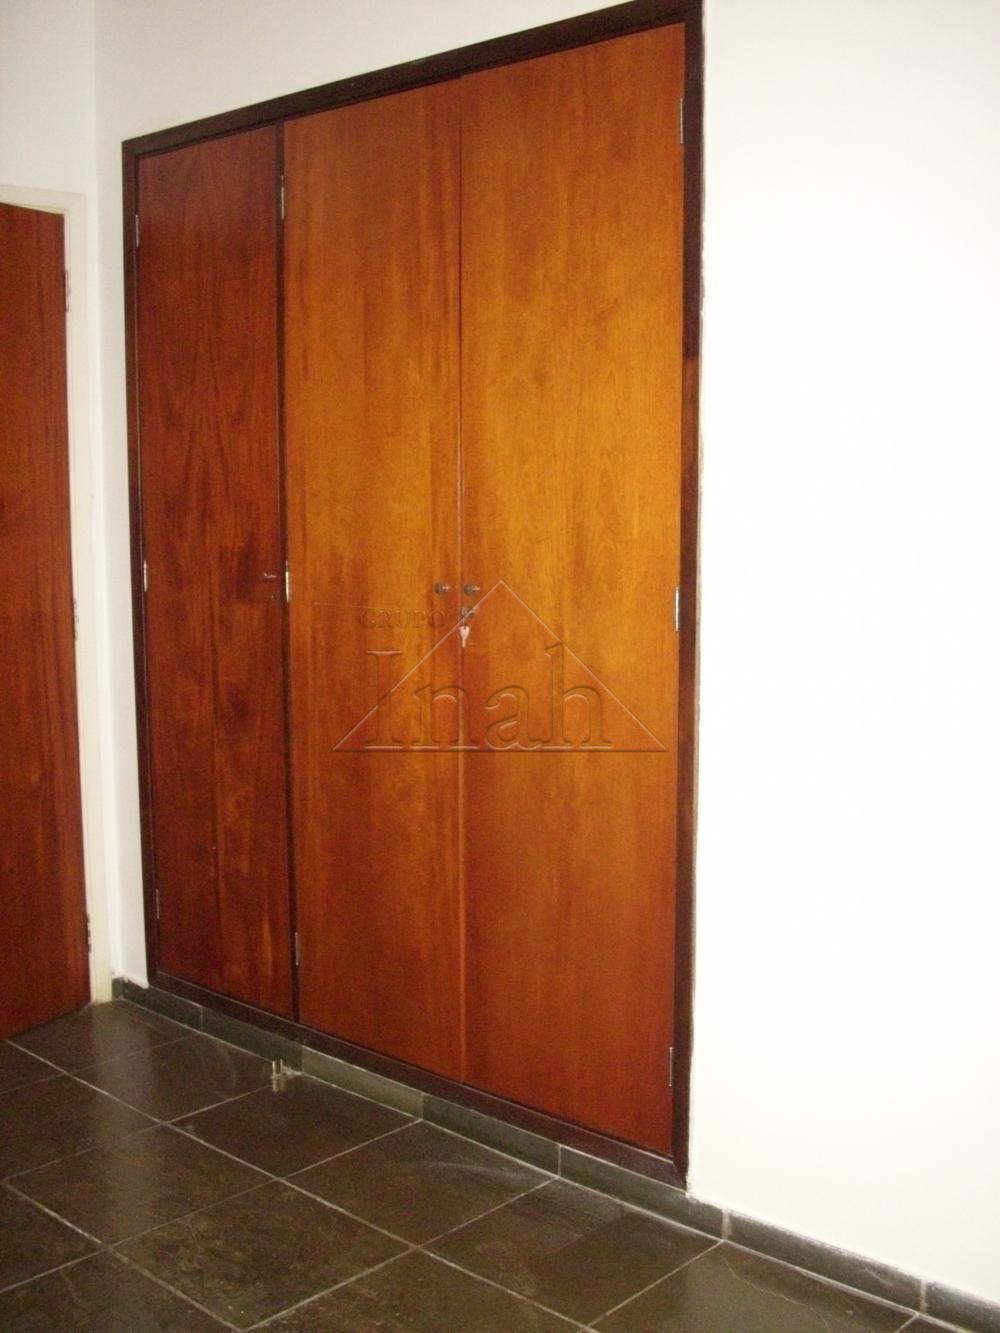 Alugar Apartamentos / Apartamento em Ribeirão Preto R$ 800,00 - Foto 2